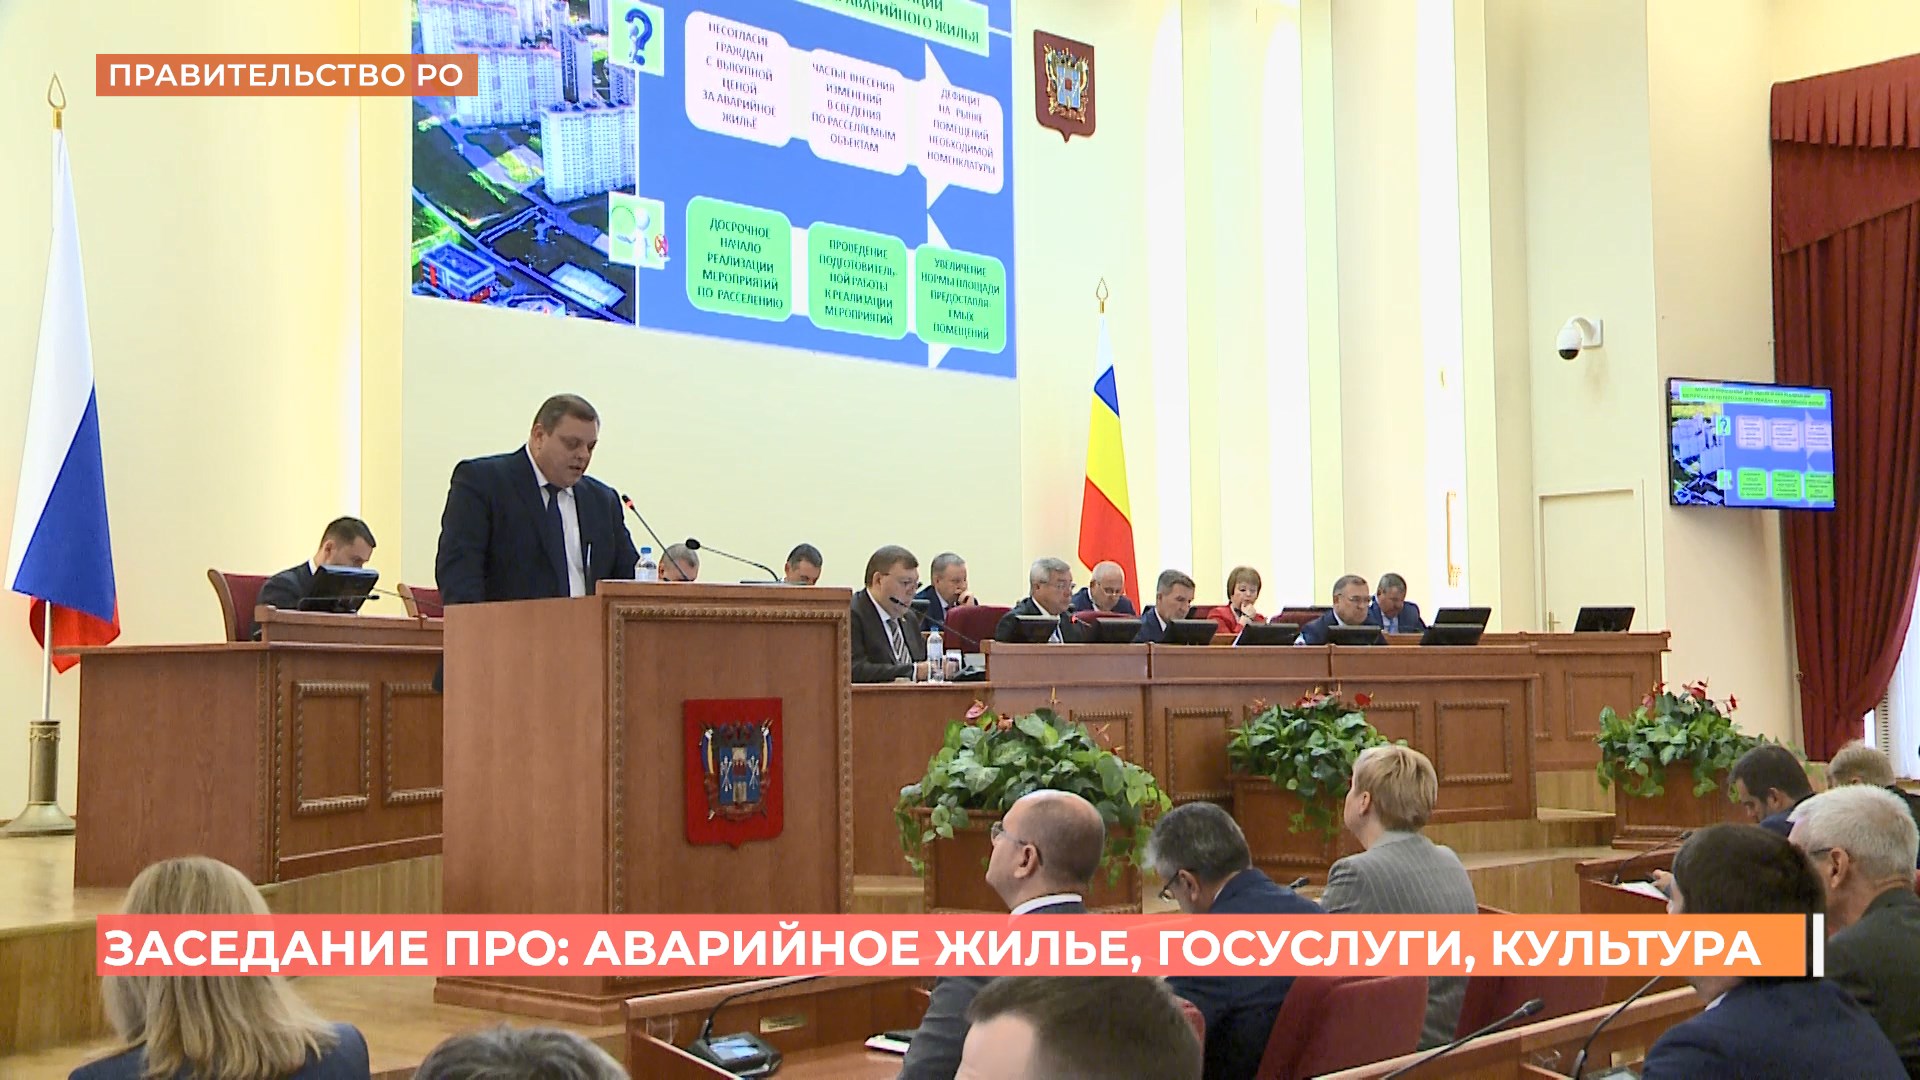 Заседание Правительства Ростовской области: аварийное жилье, госуслуги, культура